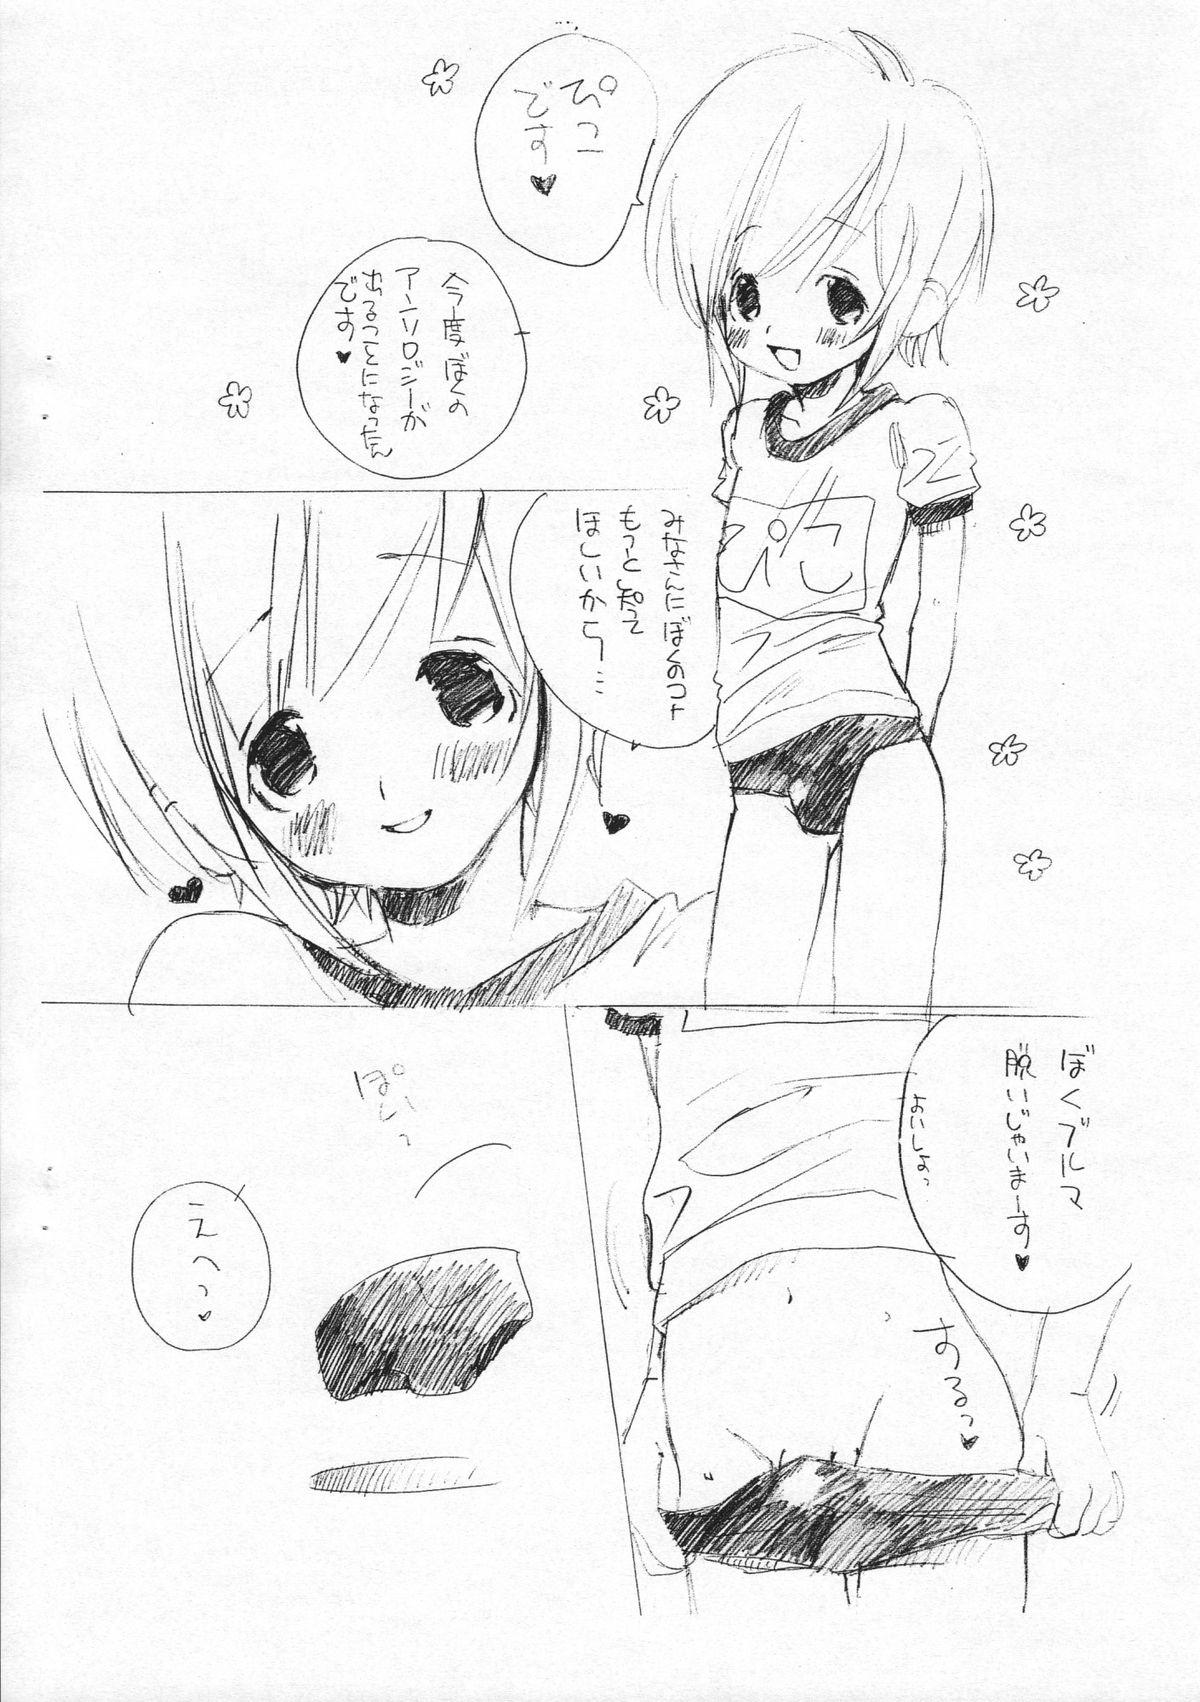 White Chick Bokutachi! Shotappuru!! - Boku no pico Transsexual - Page 10